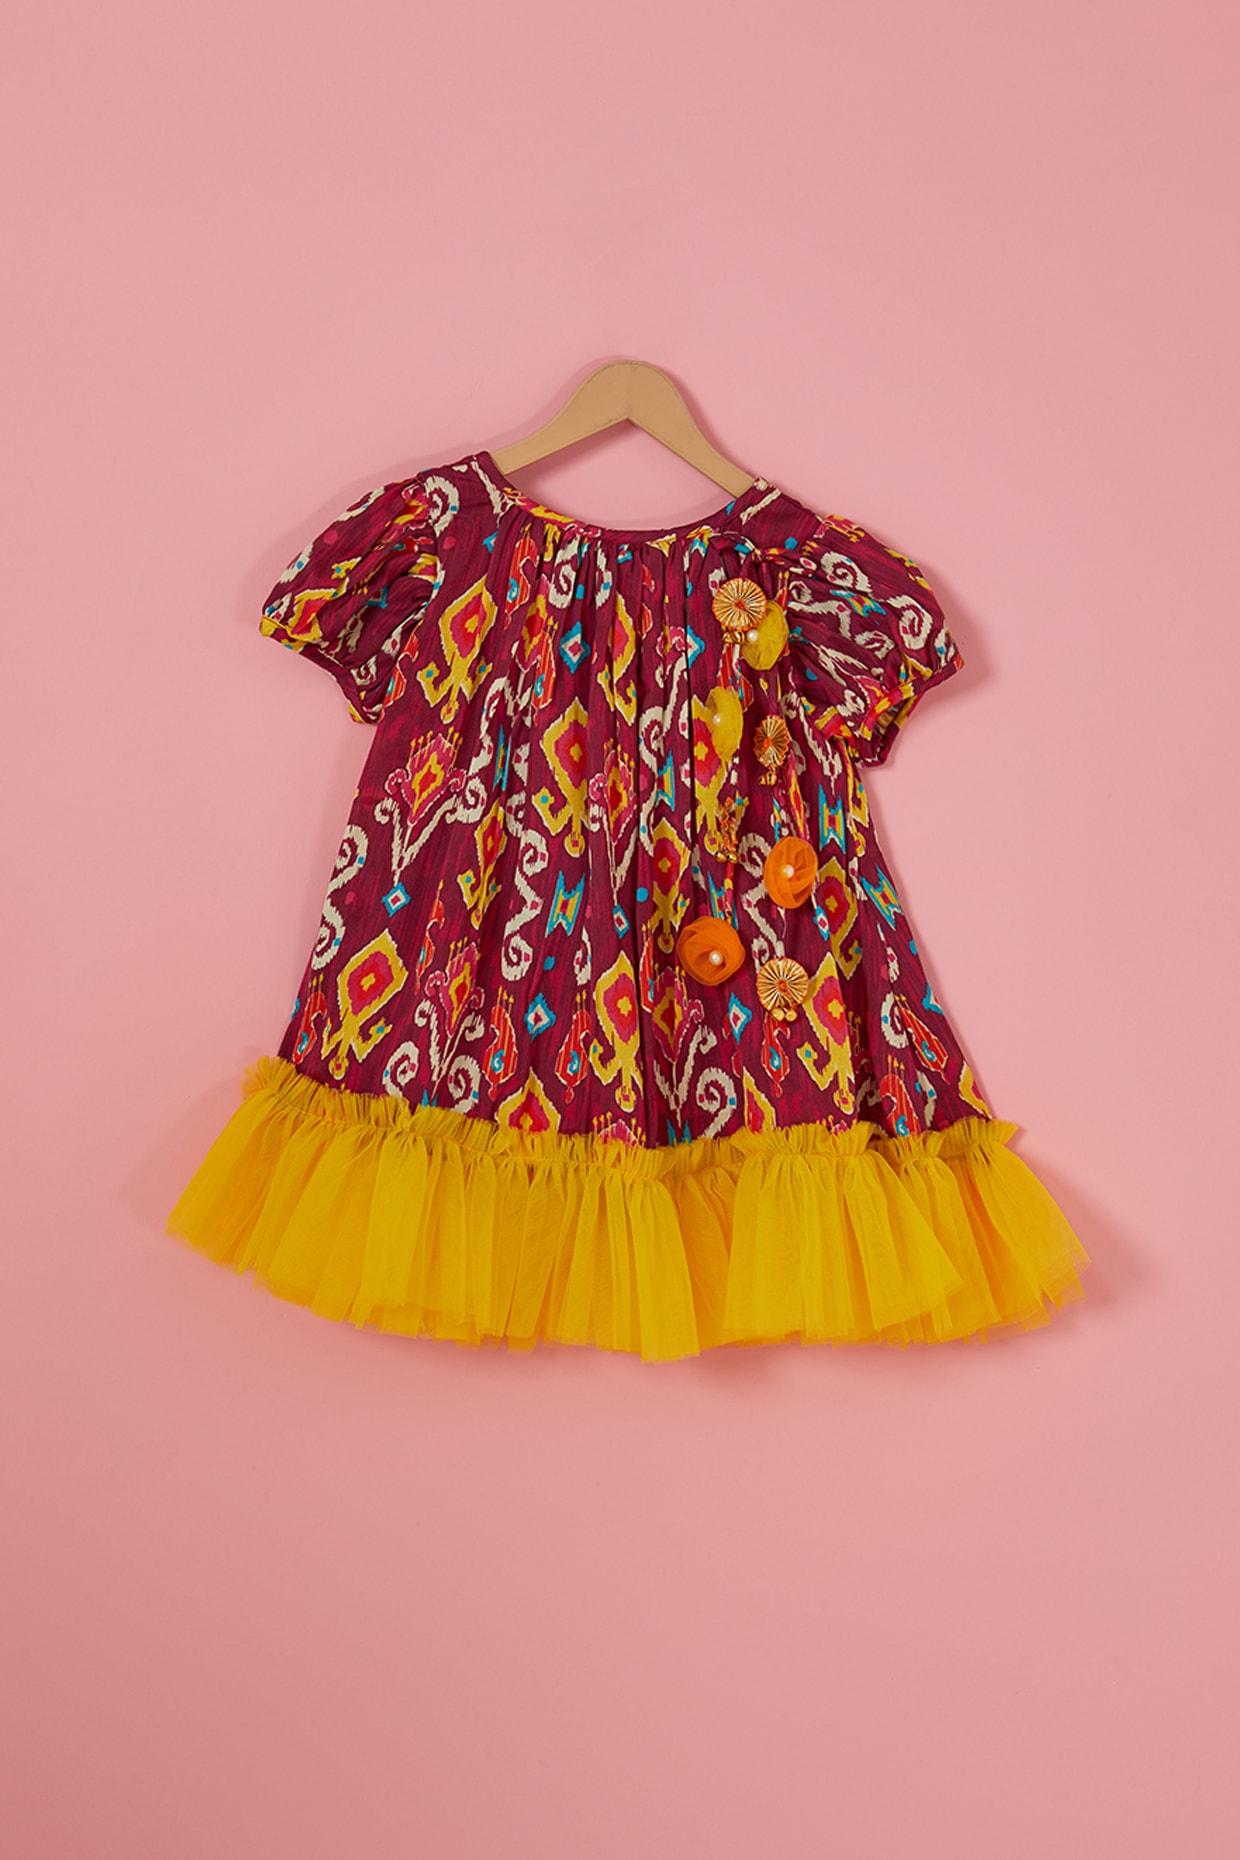 Cute Baby Girls Velvet Dress Halloween Style Pullover Dresses Ruffle Bow  Clothin | eBay